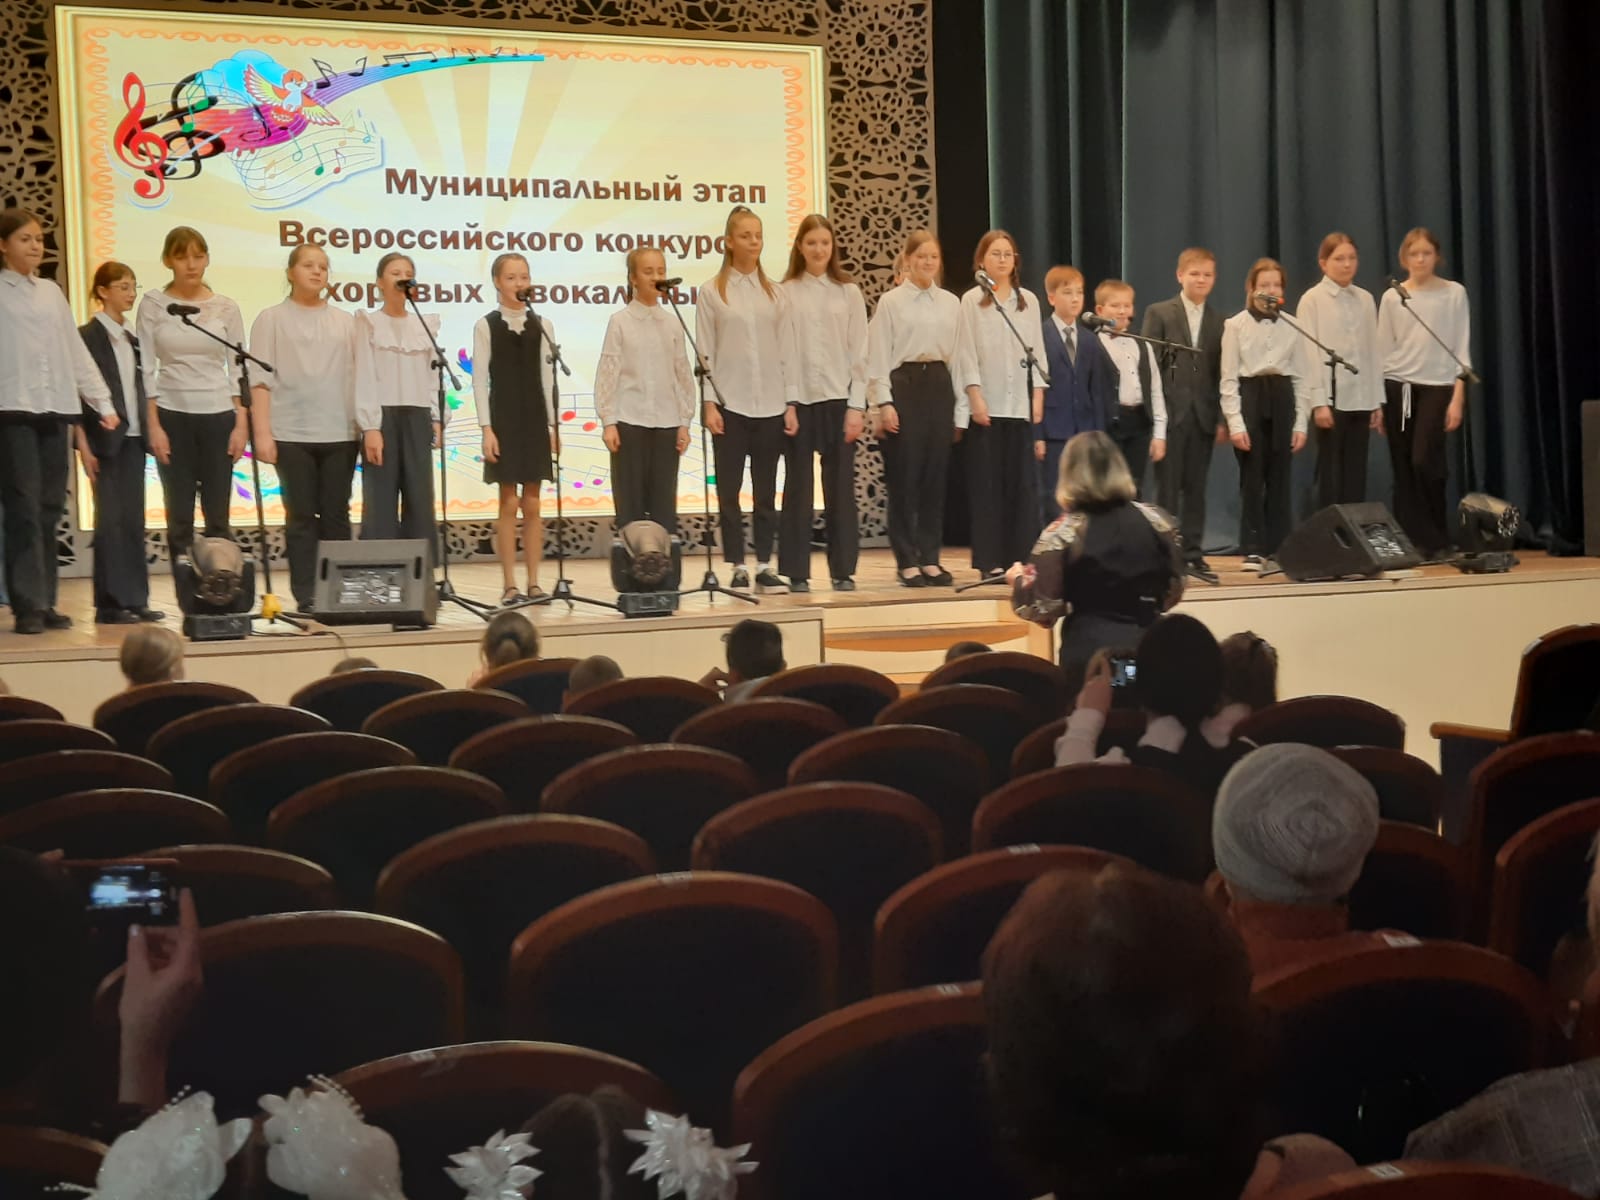 Муниципальный этап Всероссийского конкурса хоровых и вокальных коллективов среди образовательных организаций Лебяжьевского муниципального округа.